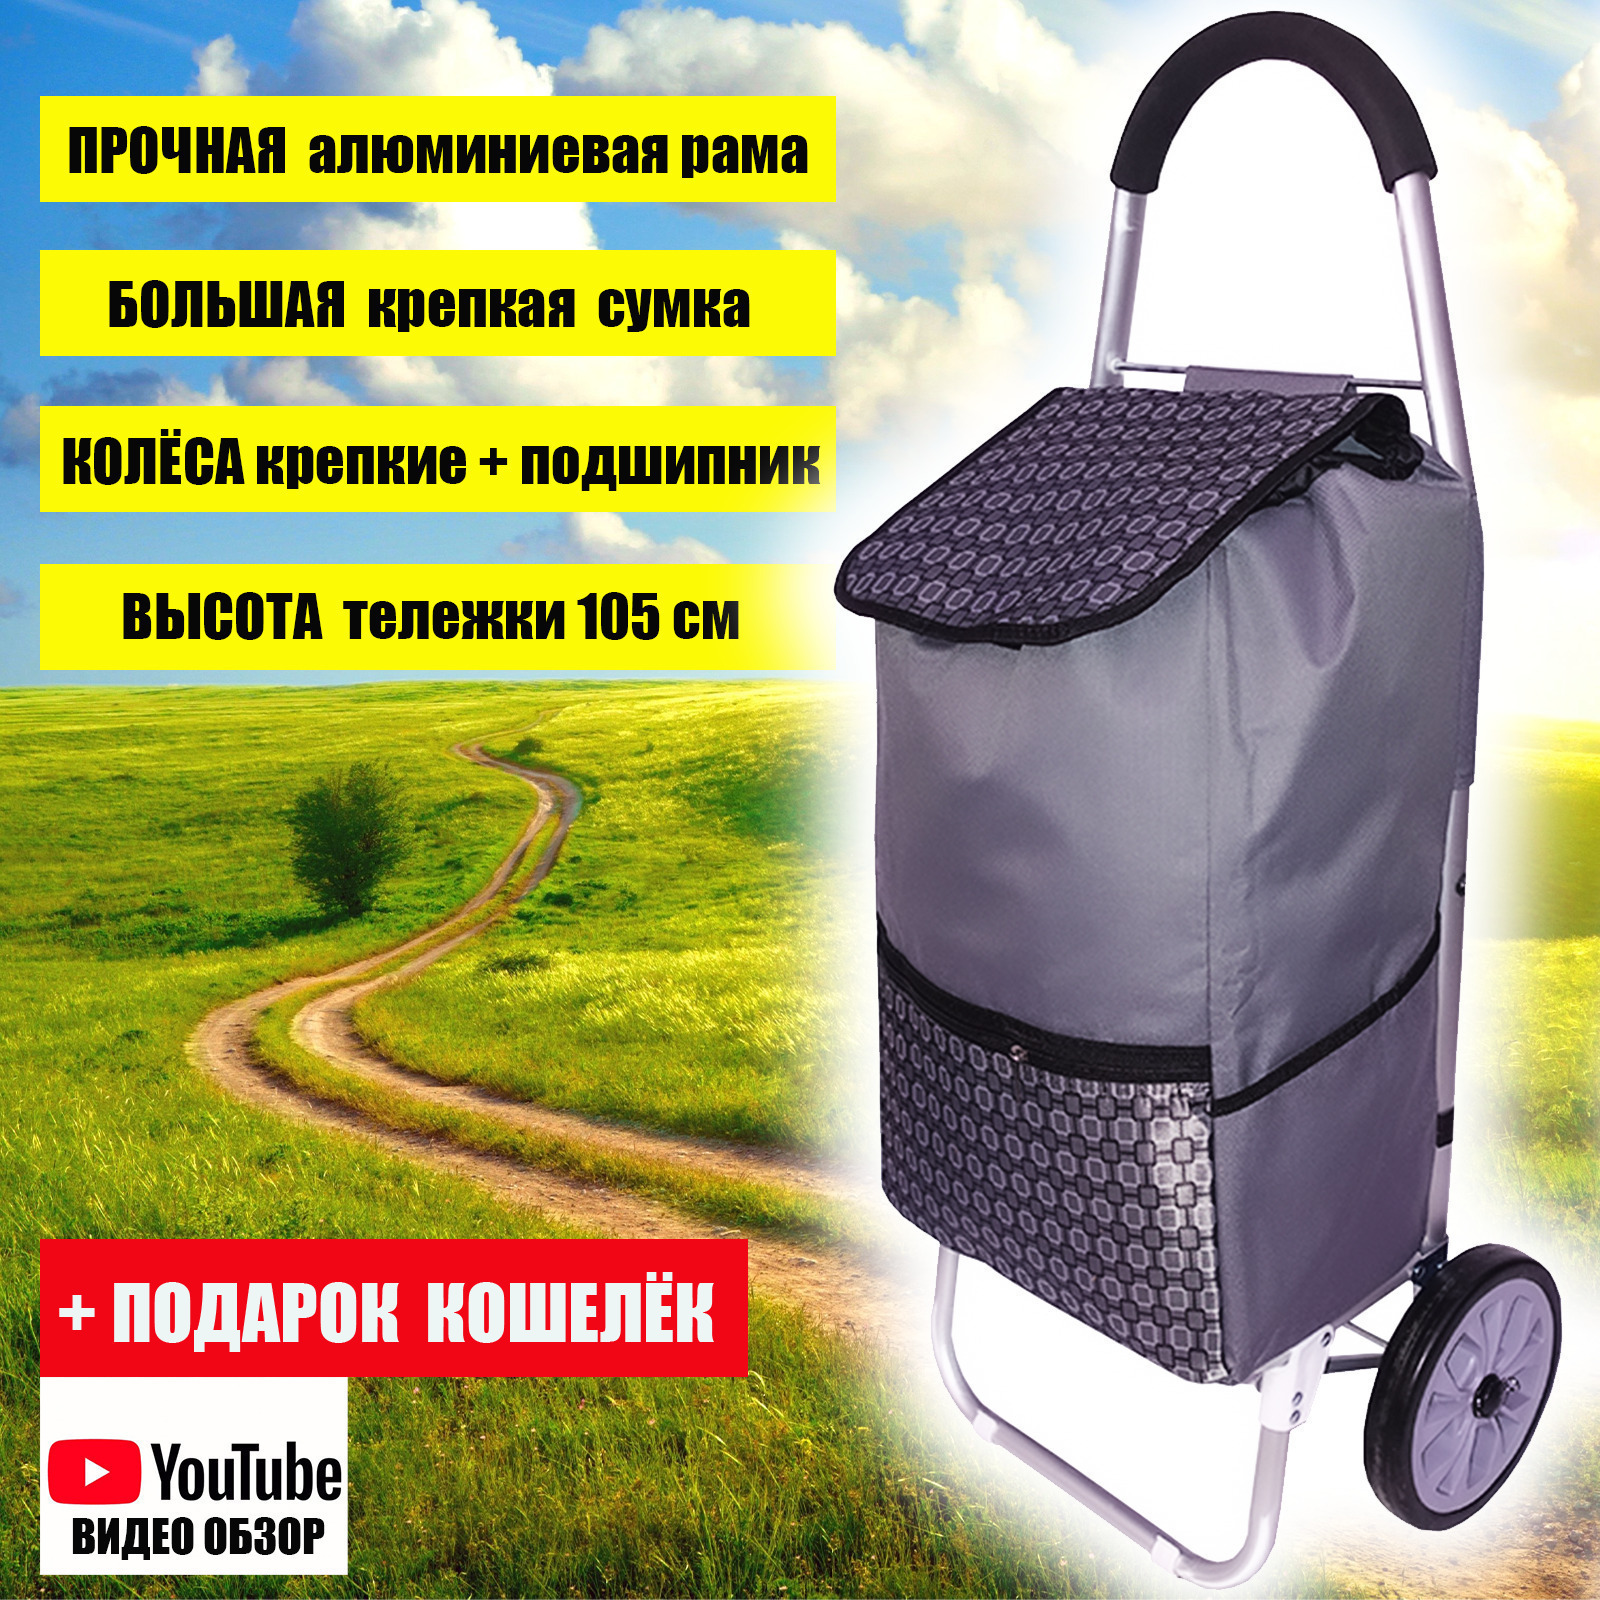 -тележка Тележка с сумкой, 2 колеса, размер сумки 57*35*23 см .